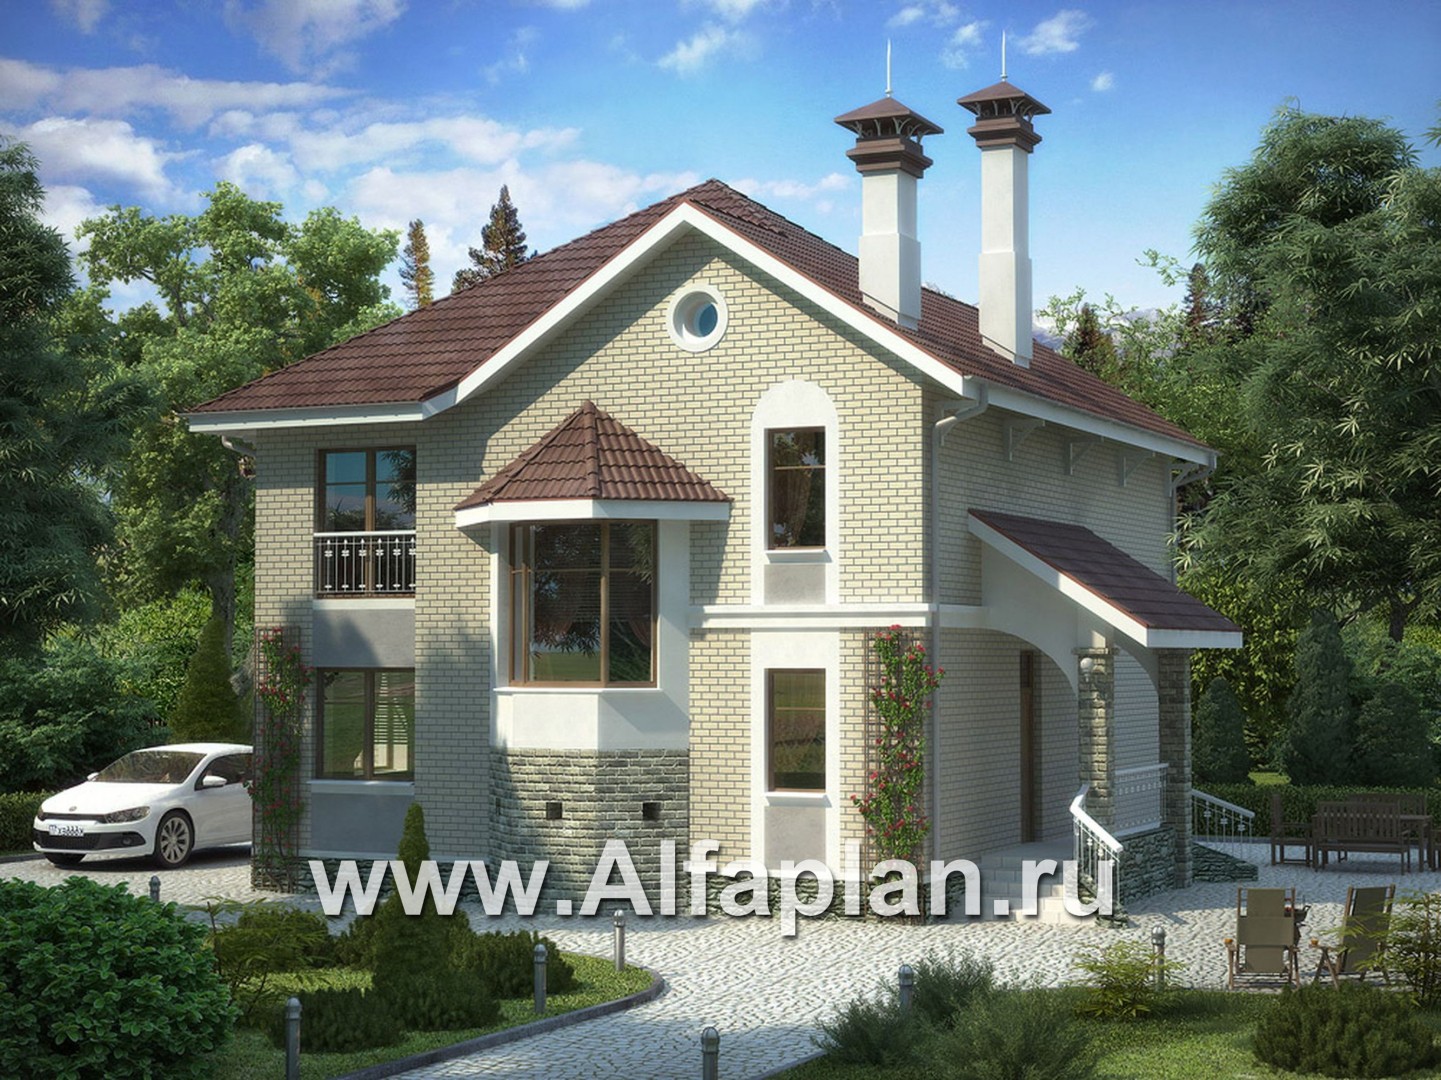 Проекты домов Альфаплан - «Лавиери Плюс»- проект дома с изящным крыльцом и эркером - основное изображение